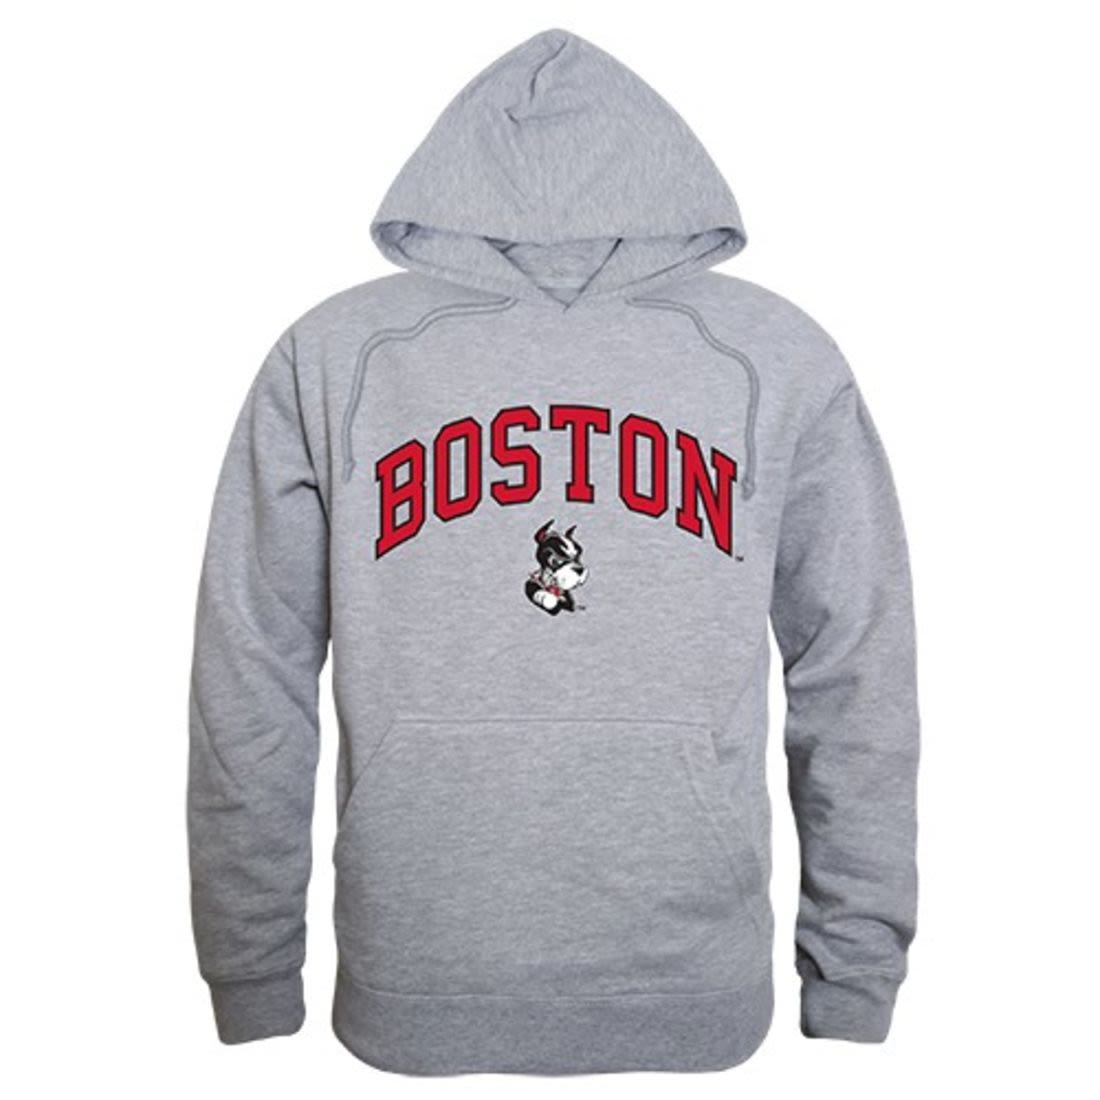 Boston University TerriersÊ Campus Hoodie Sweatshirt Heather Grey-Campus-Wardrobe